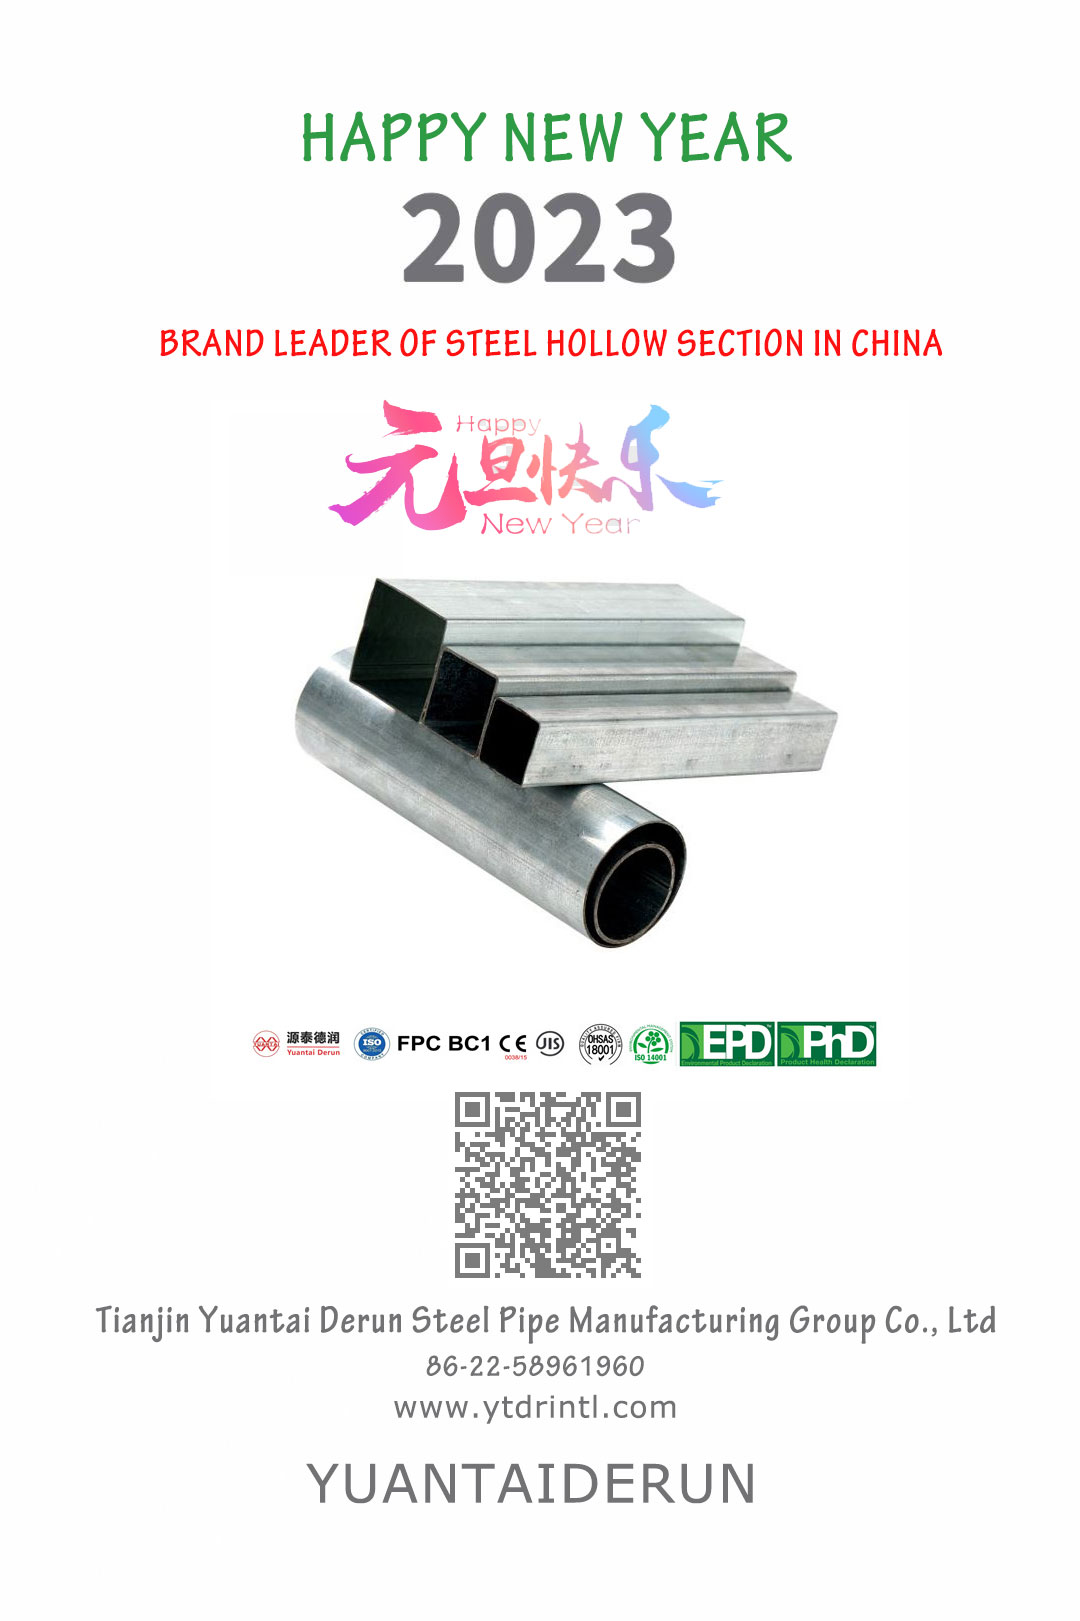 สวัสดีปีใหม่ 2023-yuantai-derun-steel-pipe-group